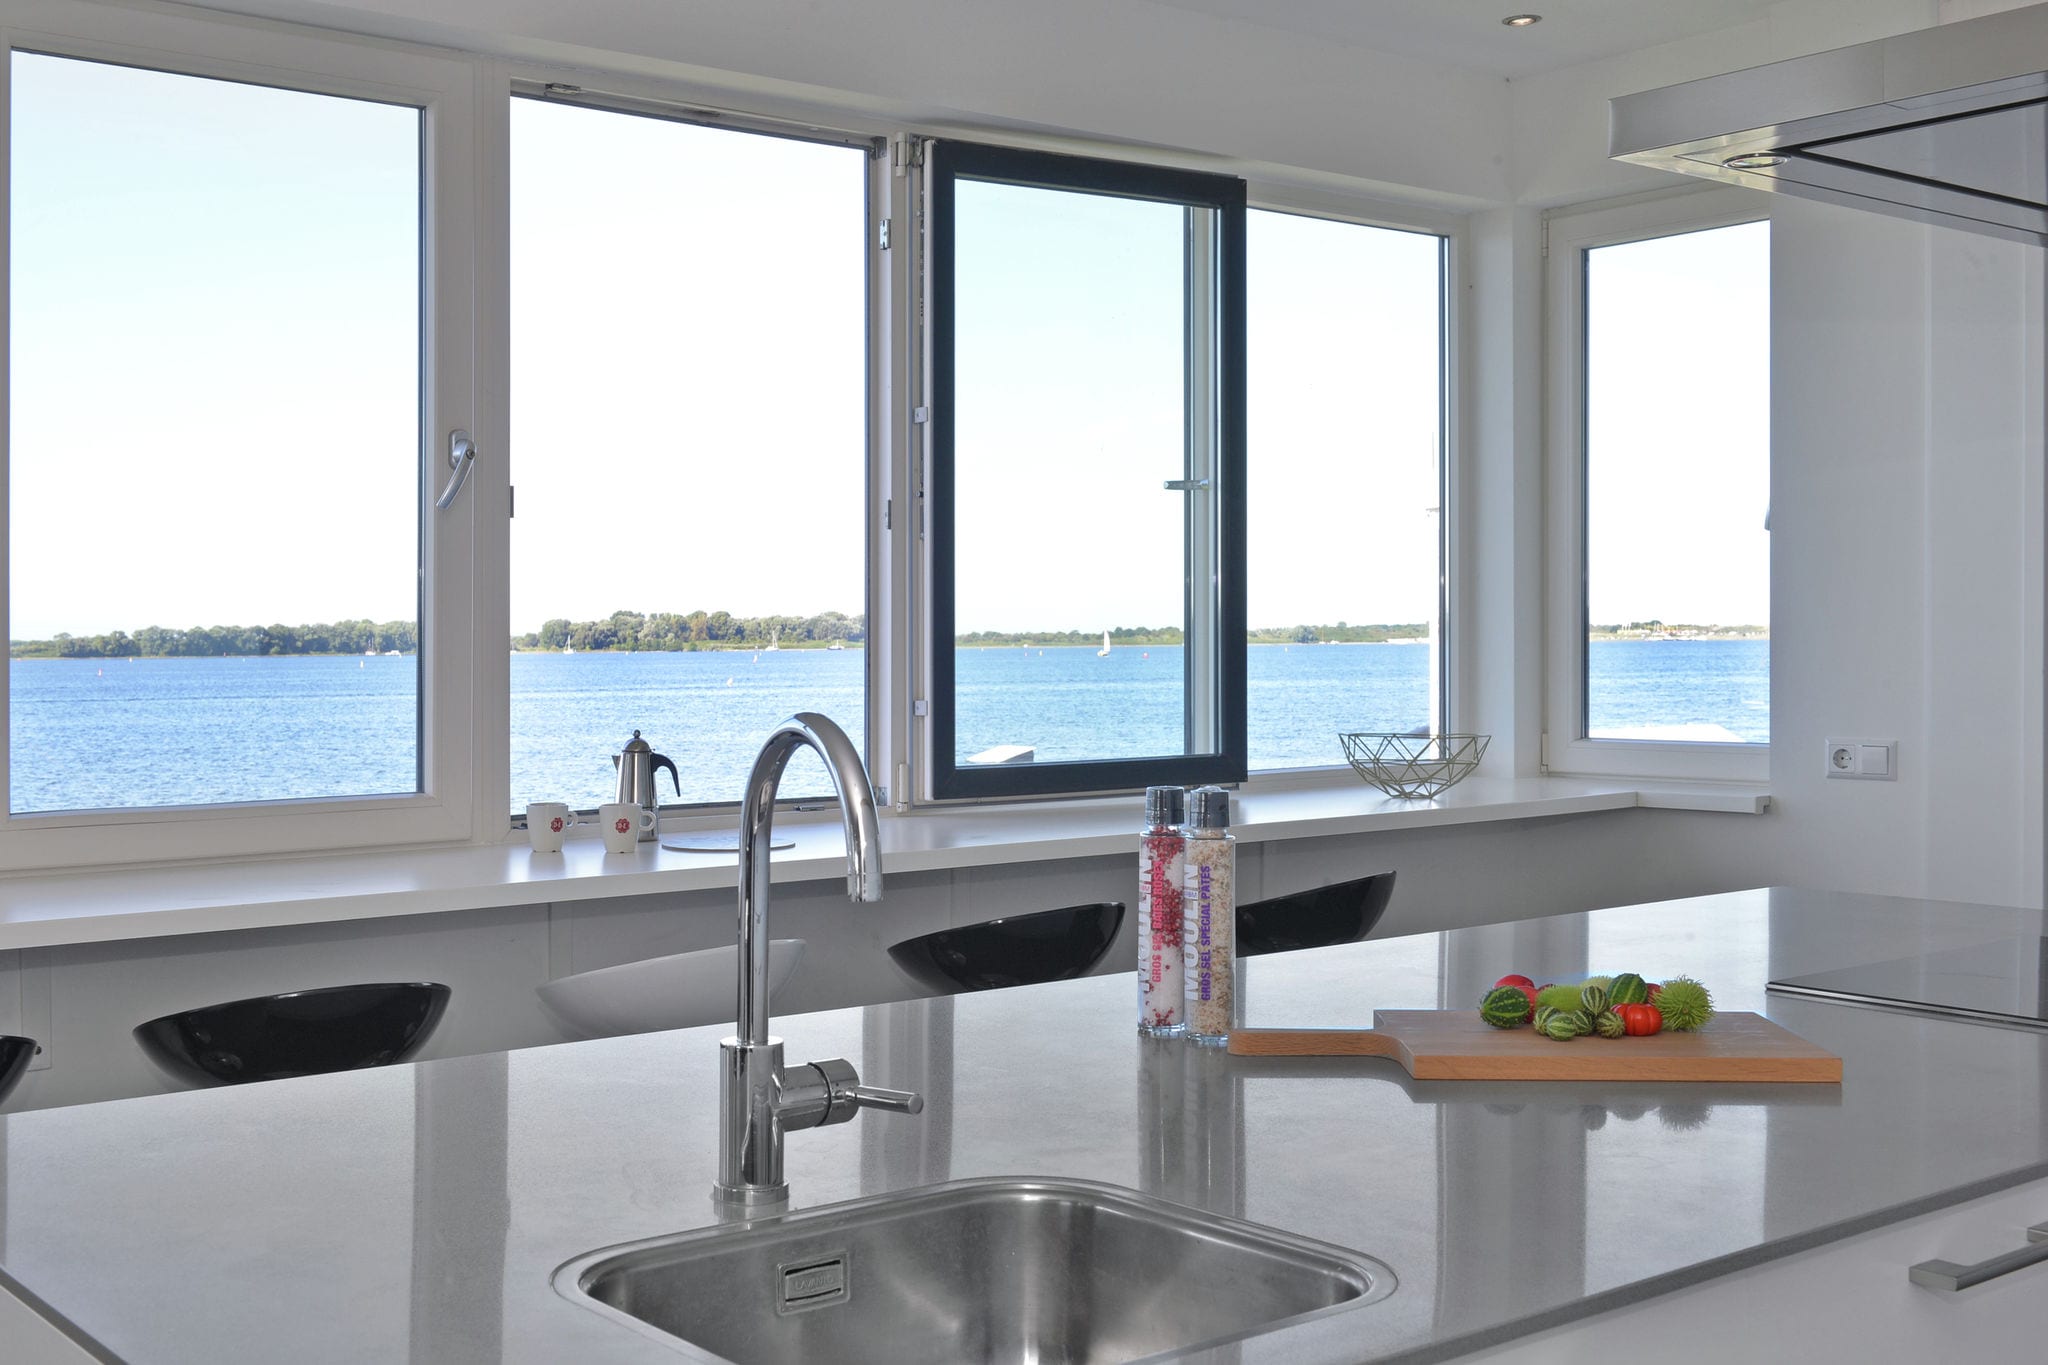 Luxe penthouse in Kamperland direct aan het water